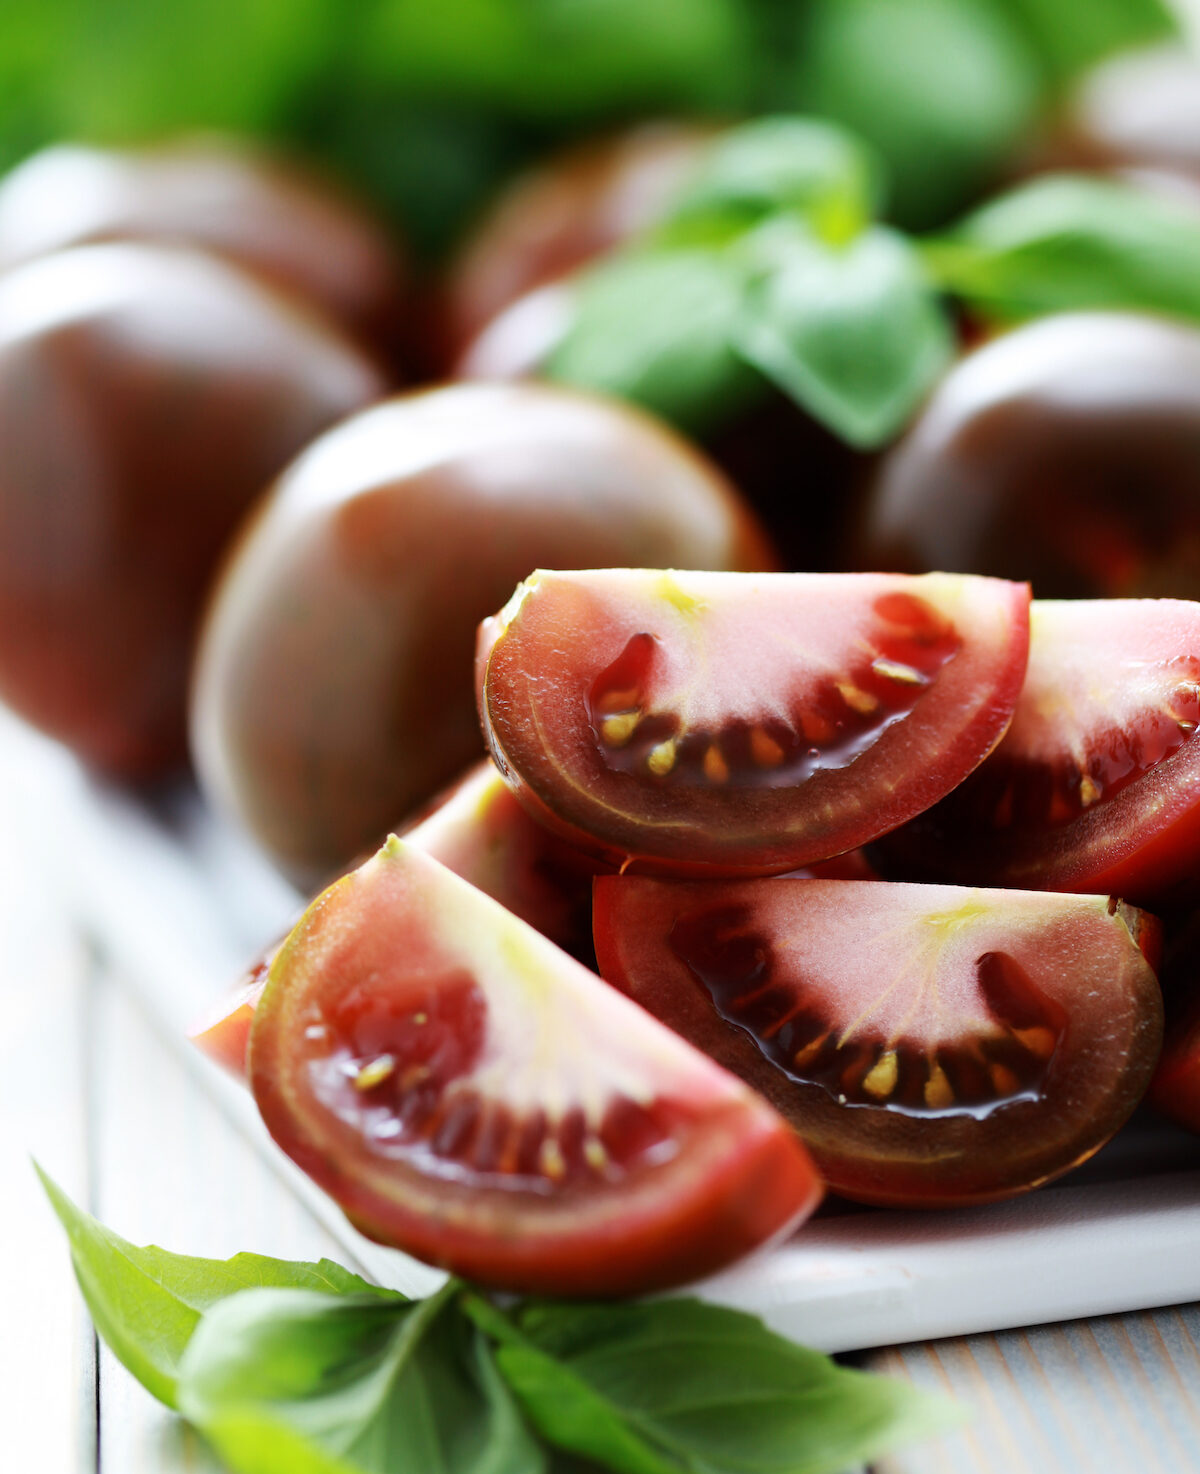 Douces, parfumées, noires – une caractéristique des tomates de la variété Kumato selon les avis des sélectionneurs et des résidents d'été